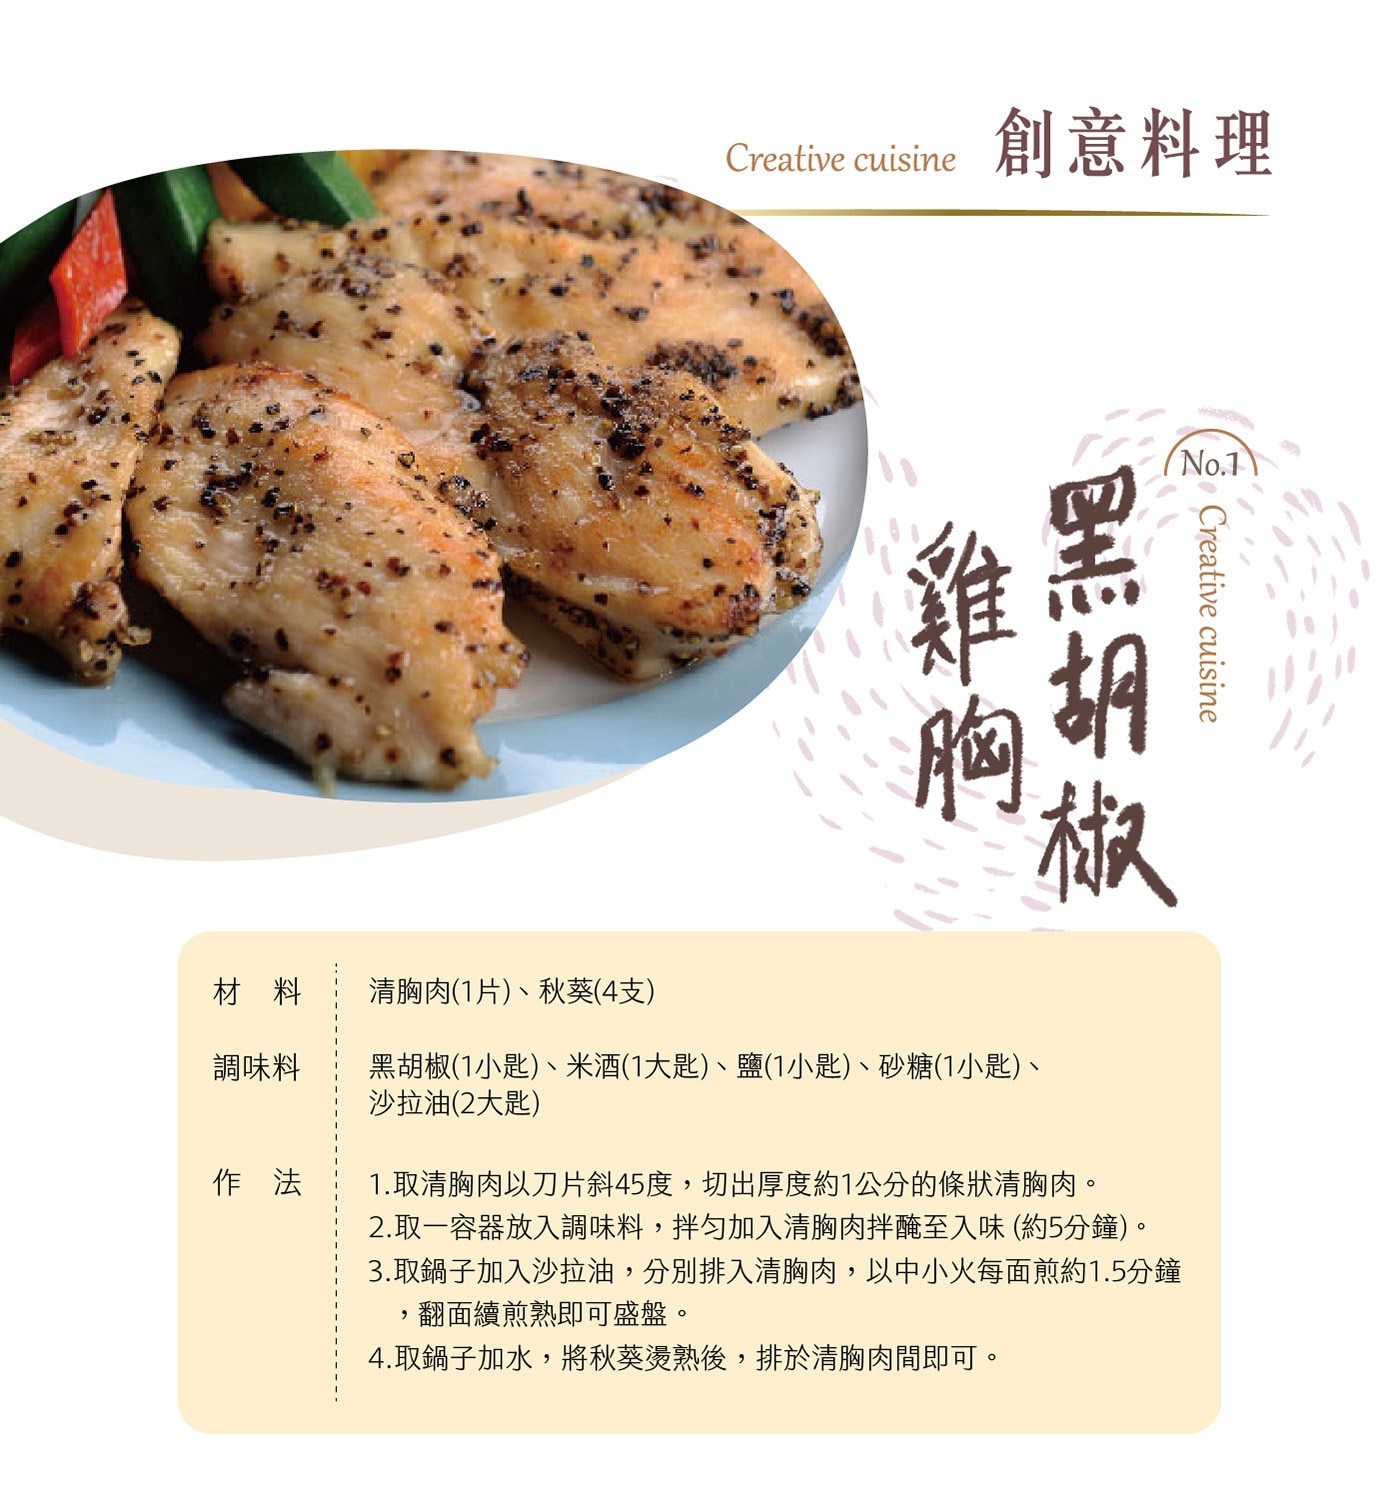 大成 台灣冷凍雞清胸肉 創意料理 黑胡椒雞胸